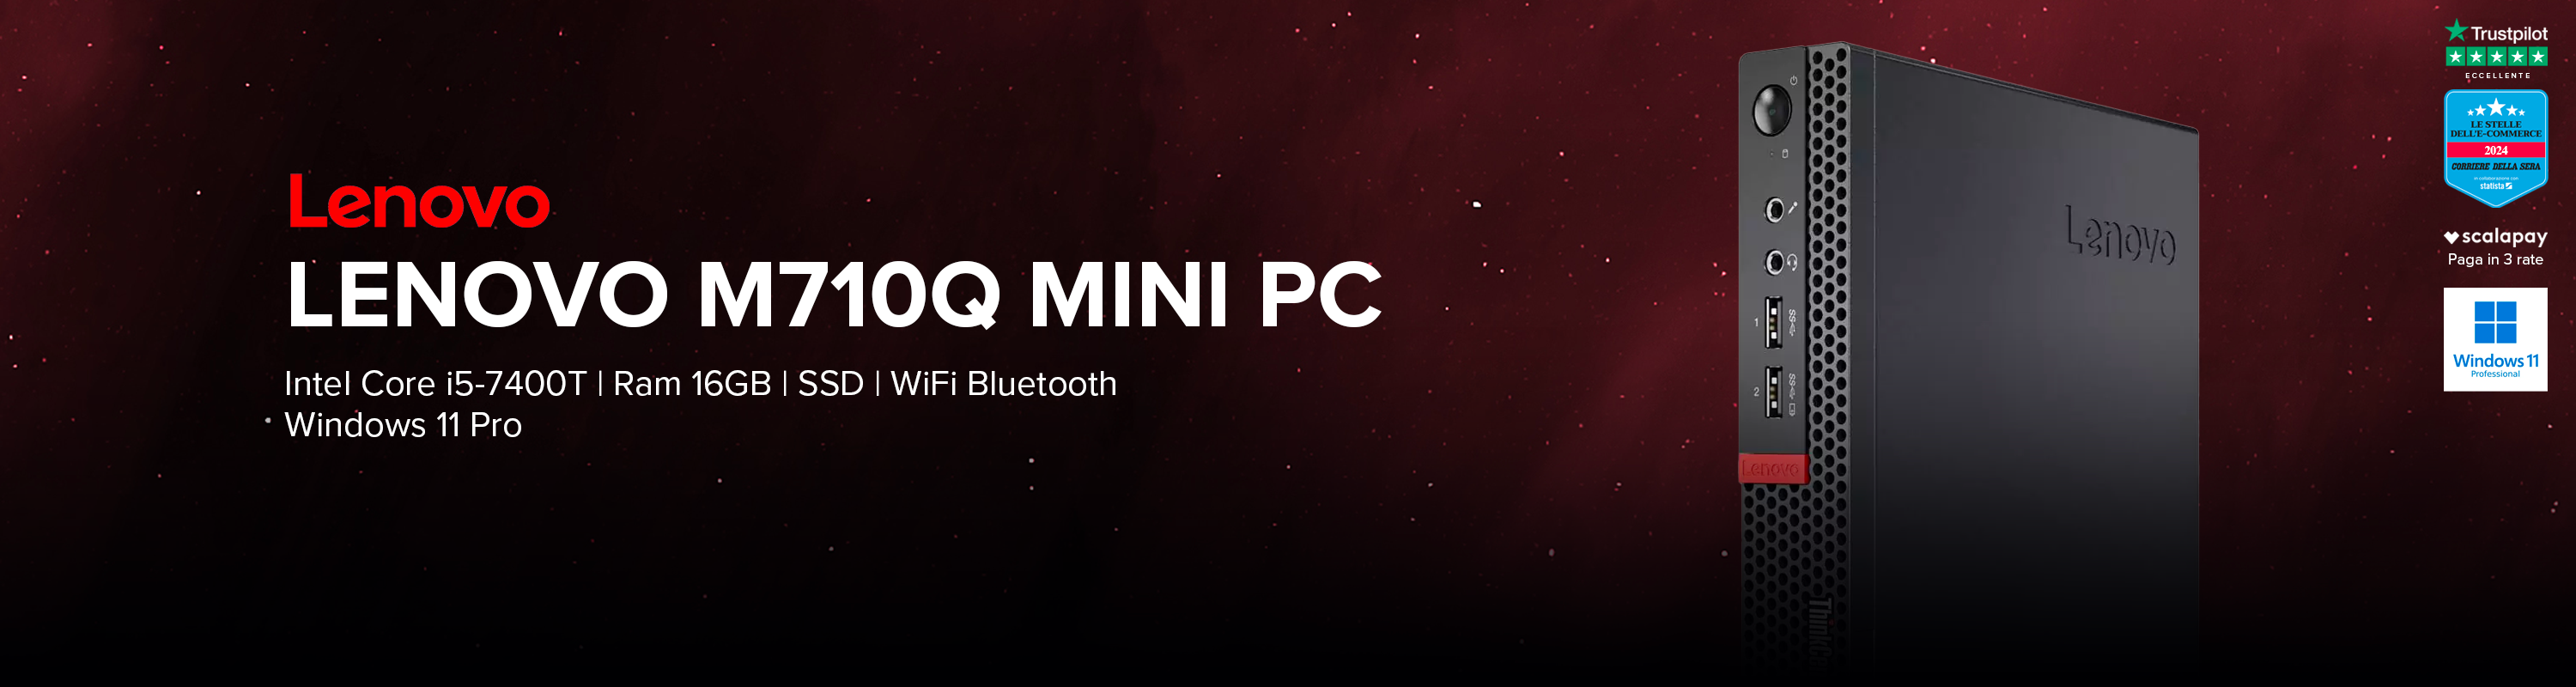 Lenovo M710q Mini PC 